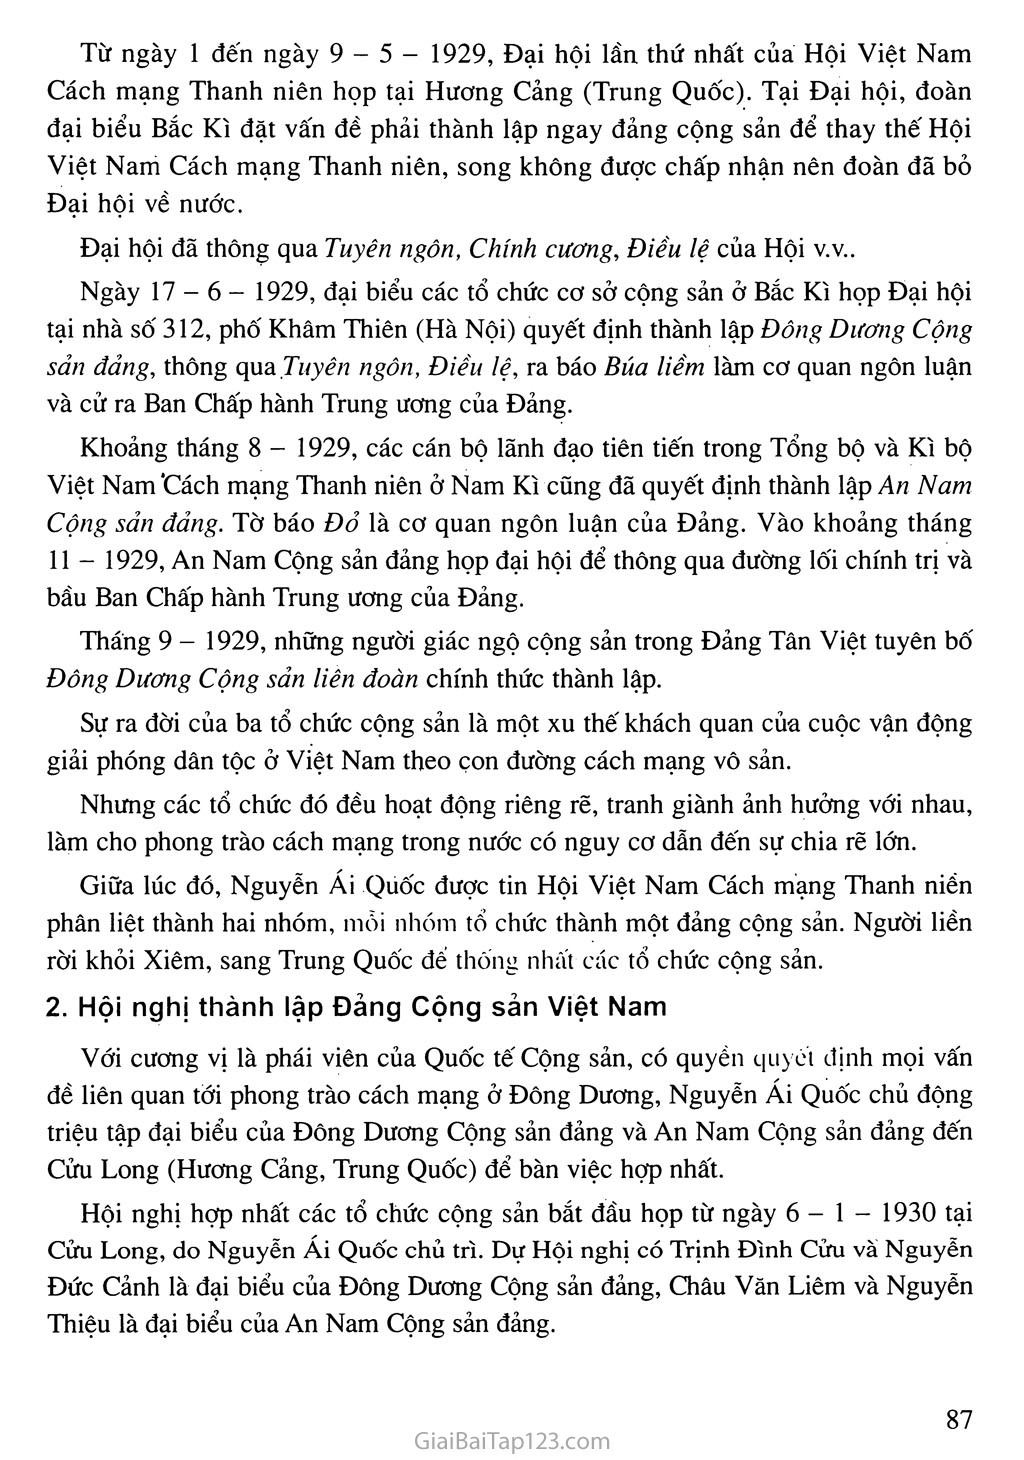 Bài 13. Phong trào dân tộc dân chủ ở Việt Nam từ năm 1925 đến năm 1930 trang 5